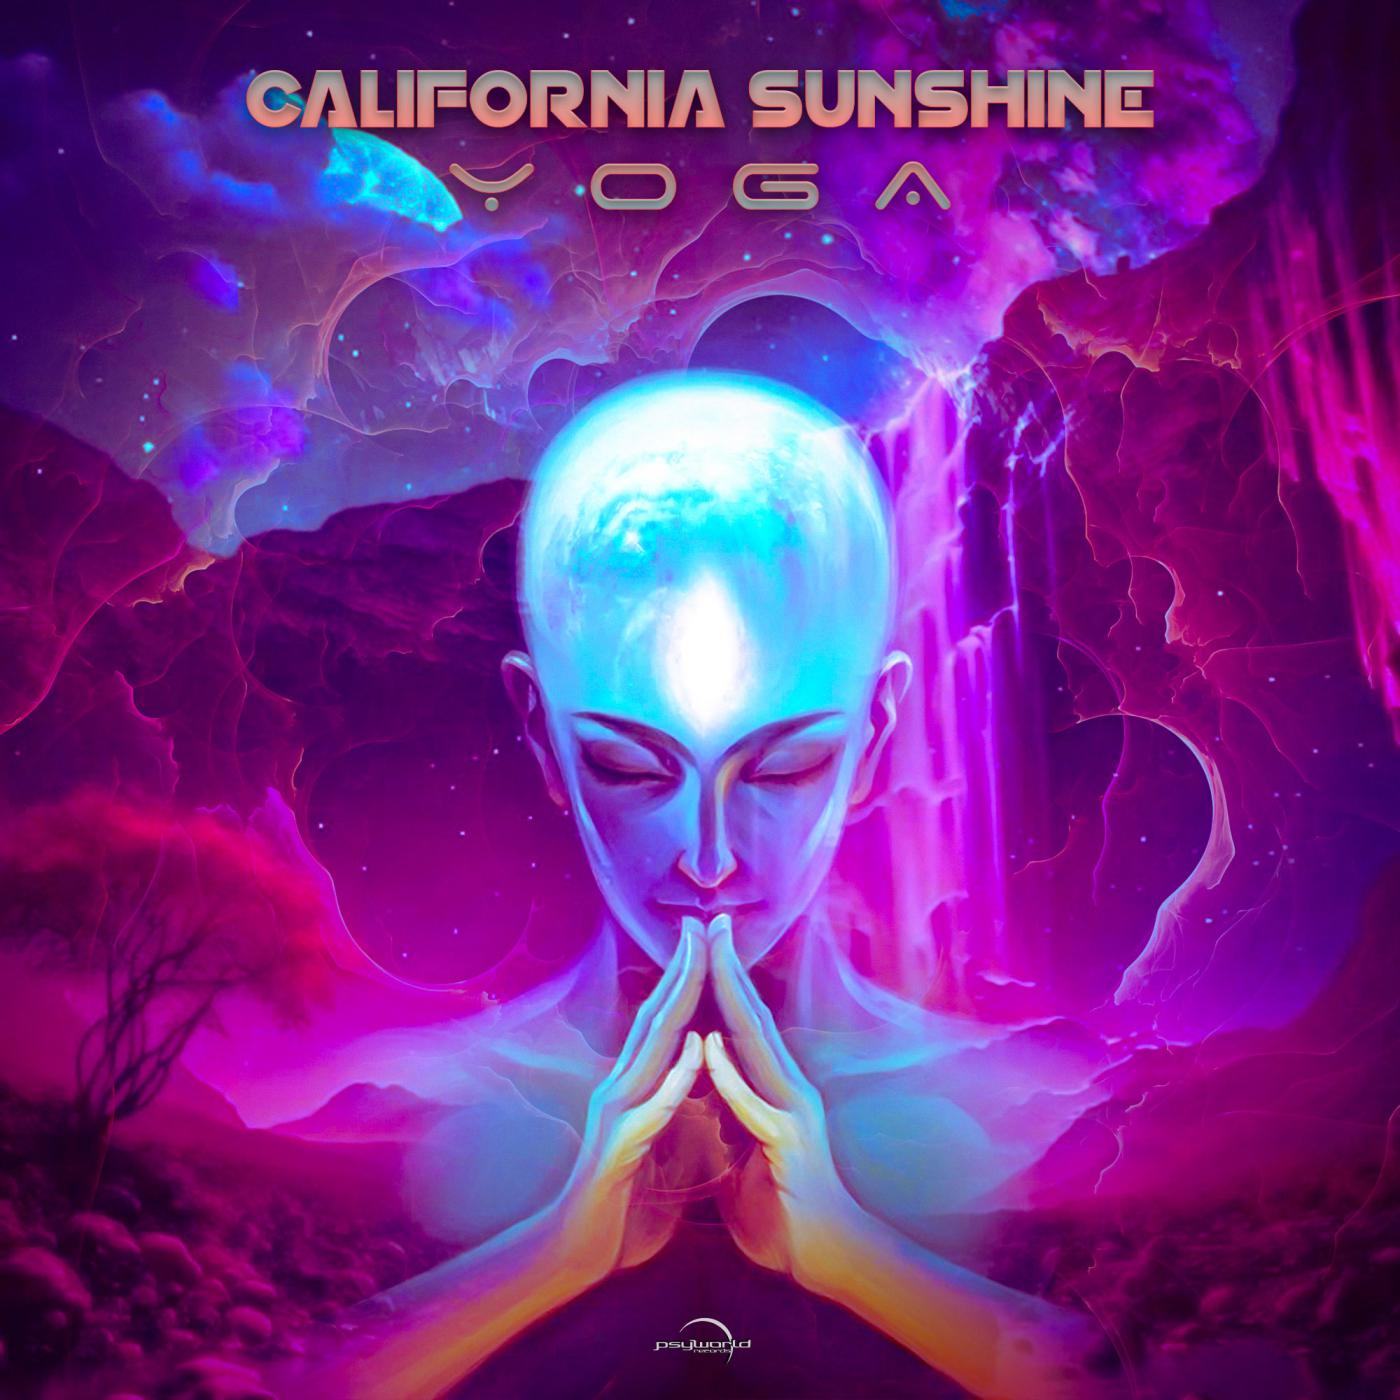 California Sunshine - Summer 89 (Revenge)